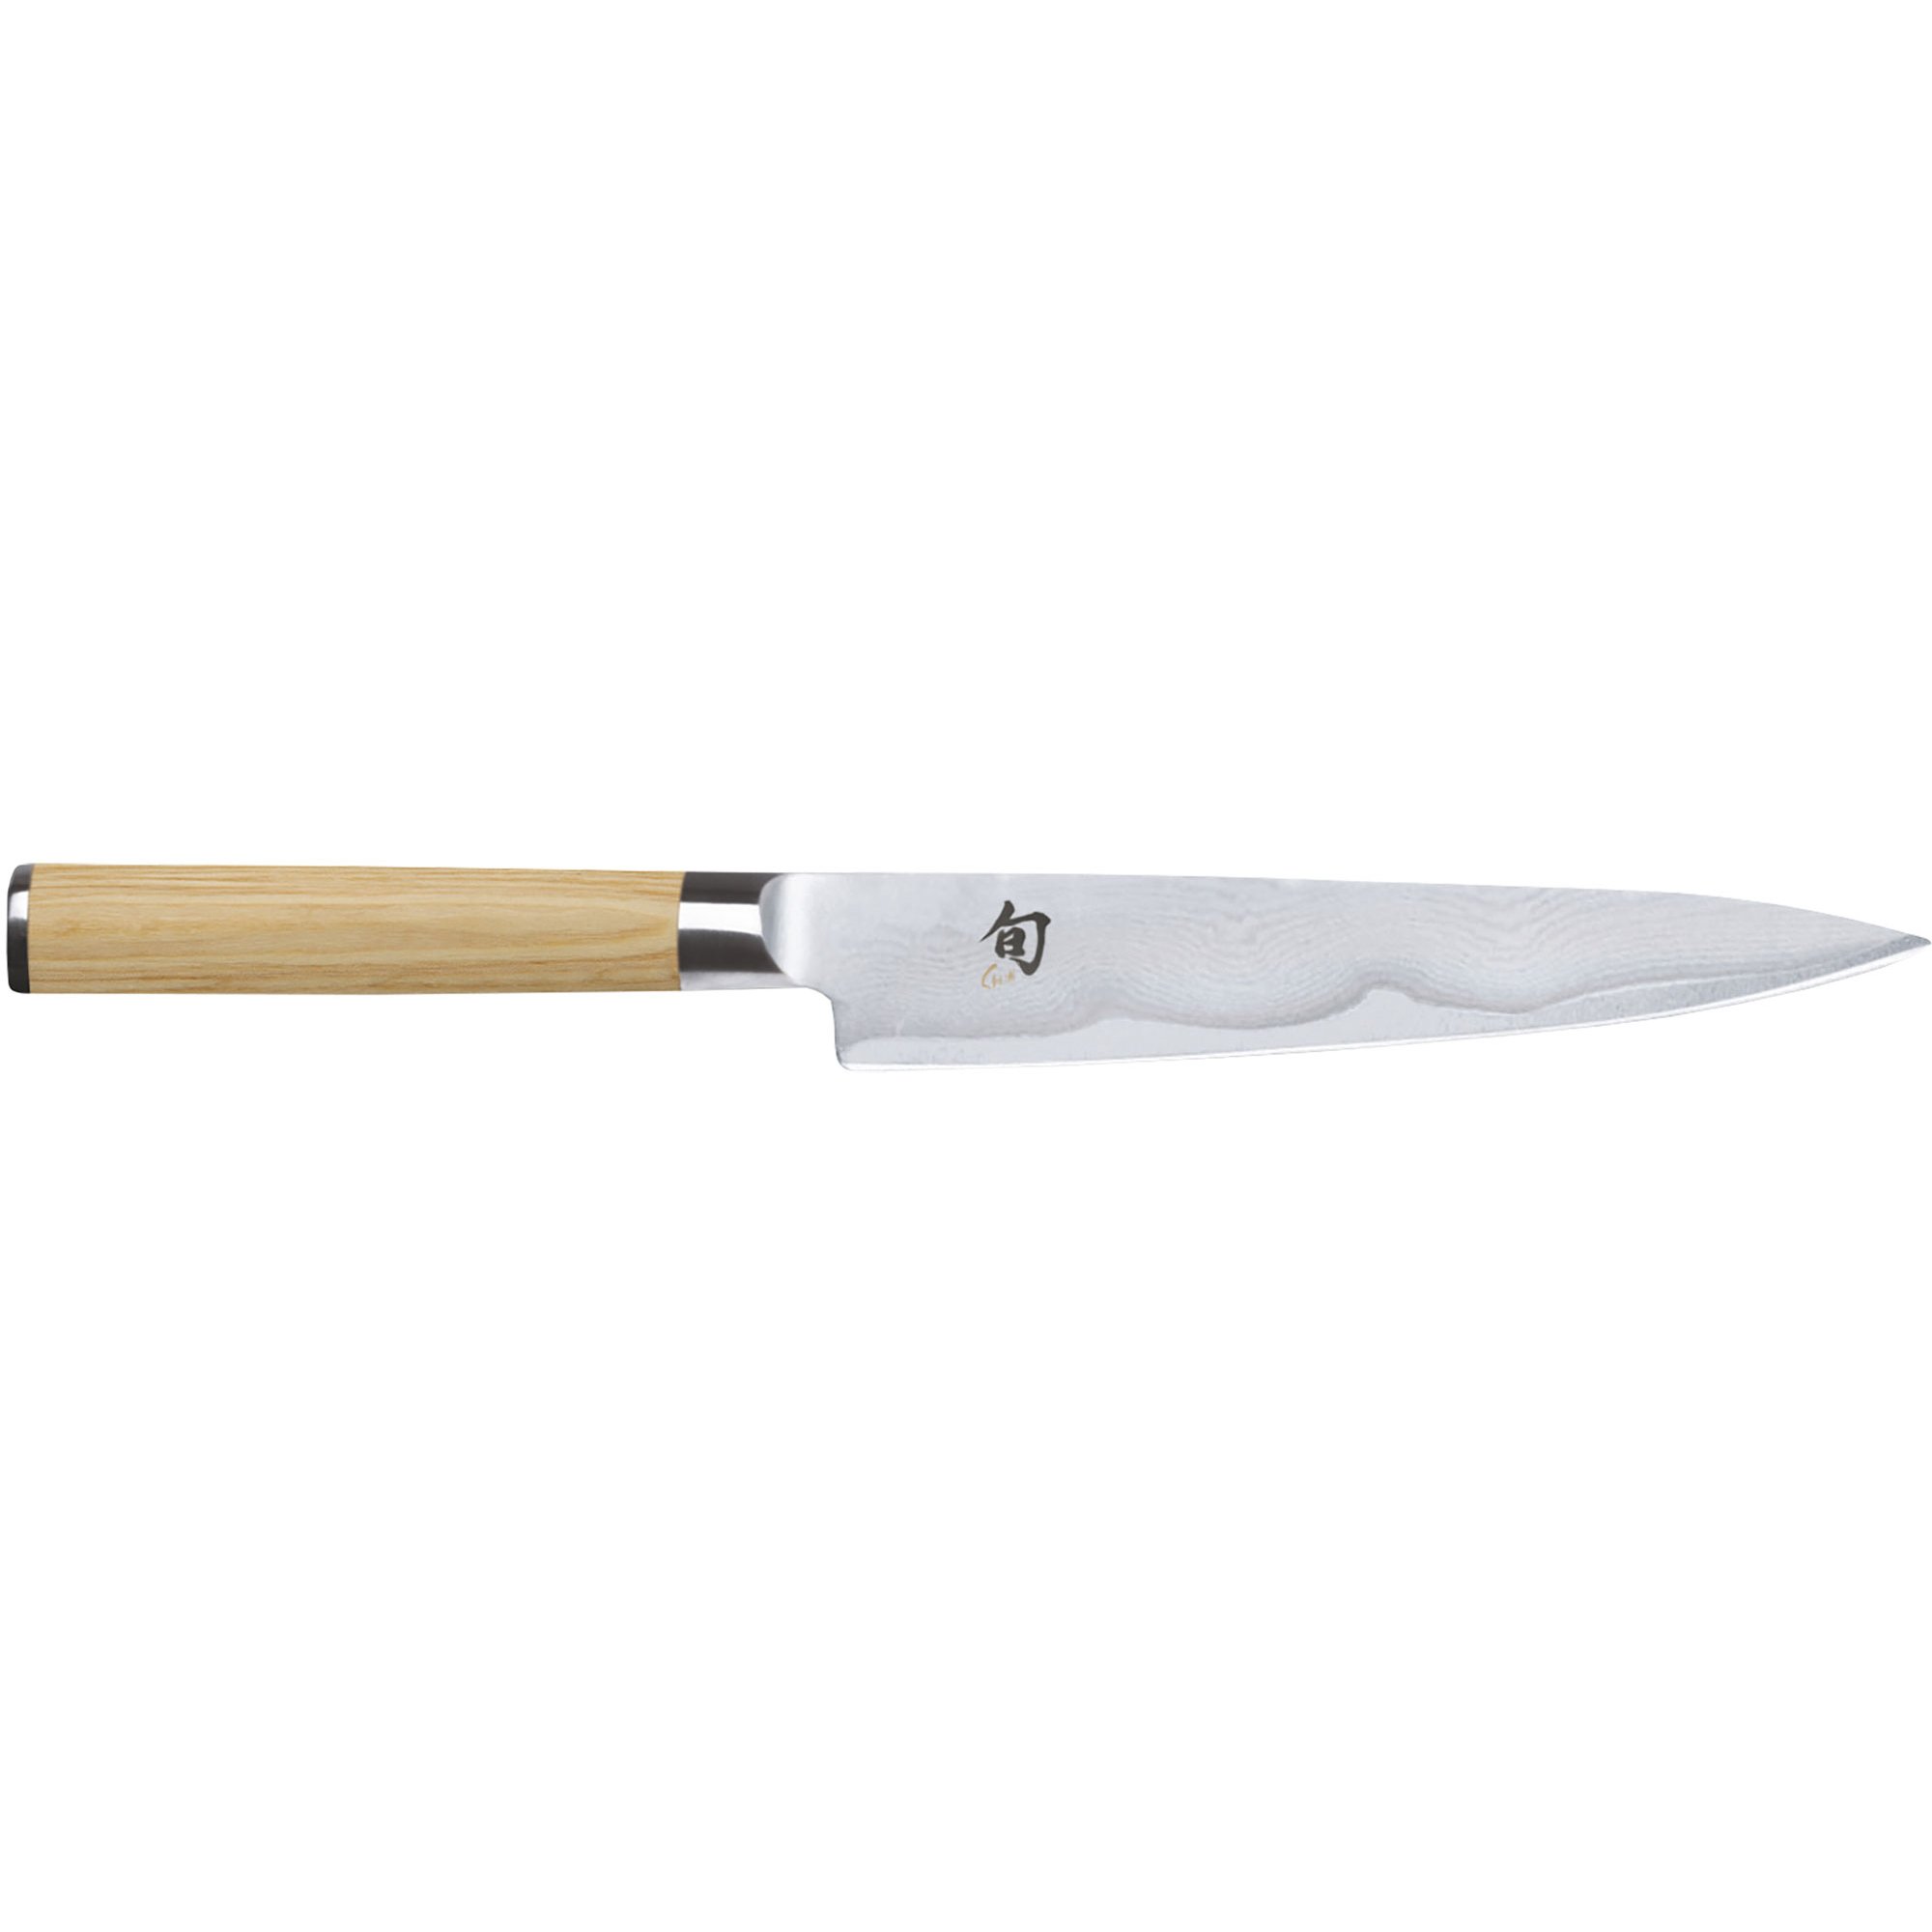 Kai Shun Classic White universalkniv, 15 cm